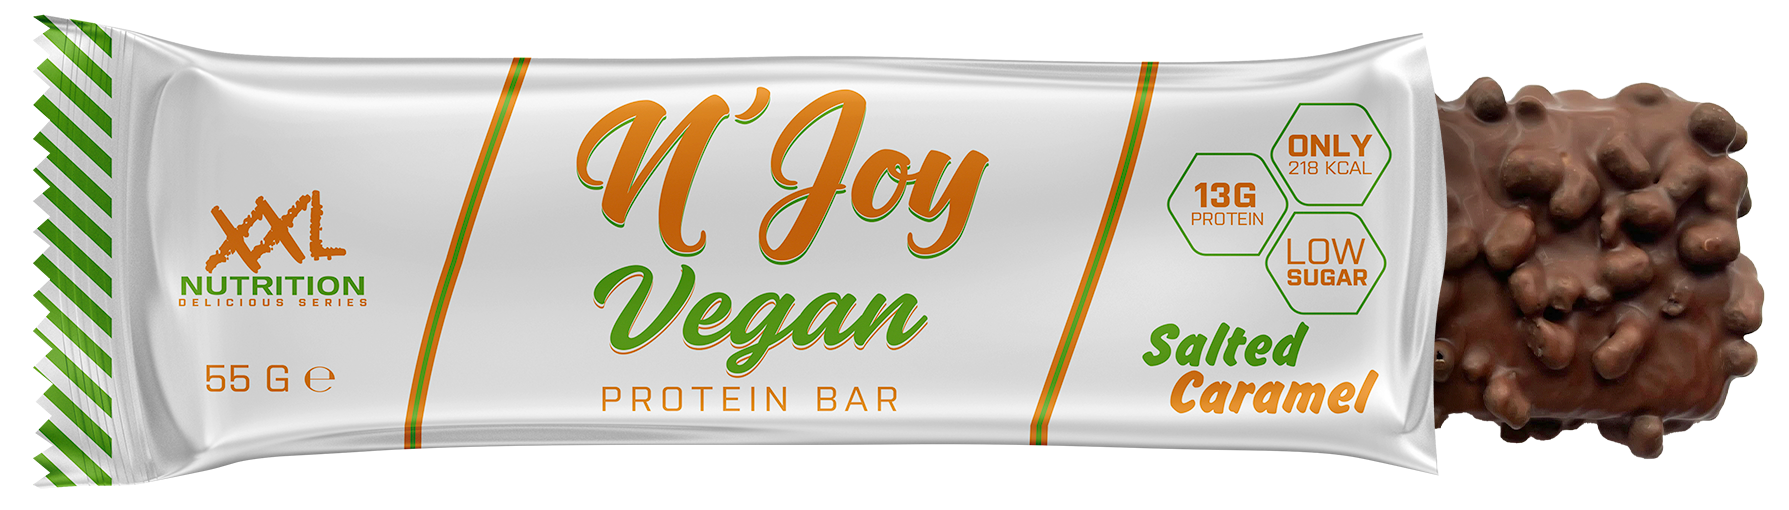 N'Joy Protein Bar - XXL Nutrition